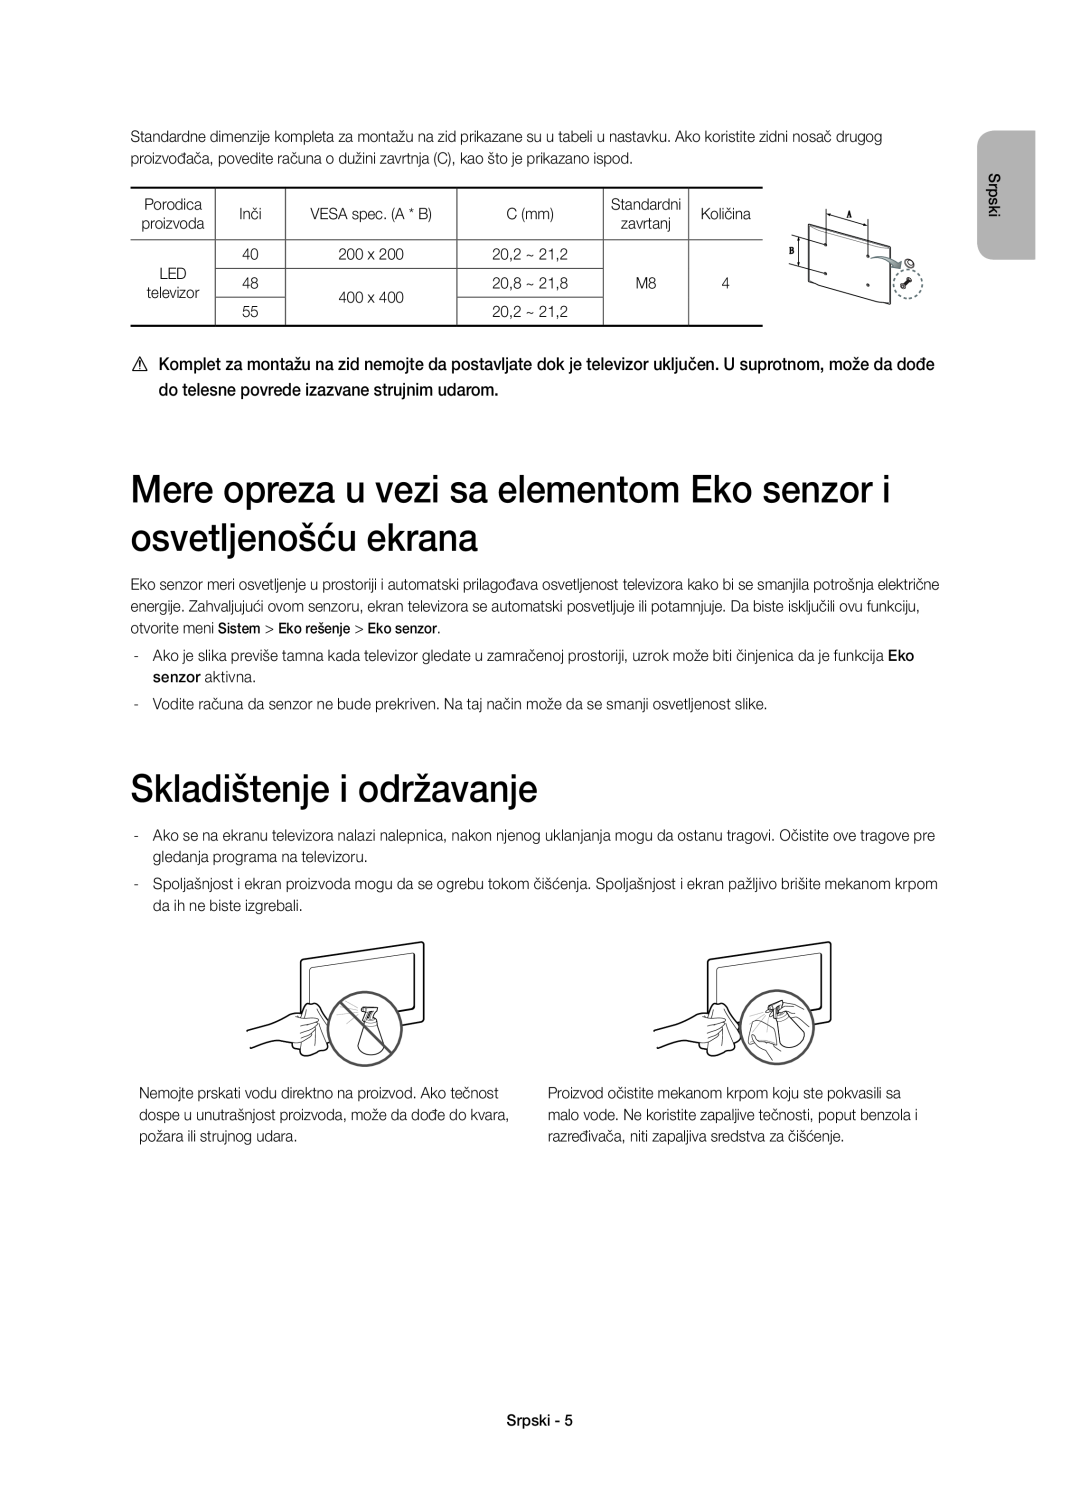 Samsung UE48H6640SLXXN manual Mere opreza u vezi sa elementom Eko senzor i osvetljenošću ekrana, Skladištenje i održavanje 